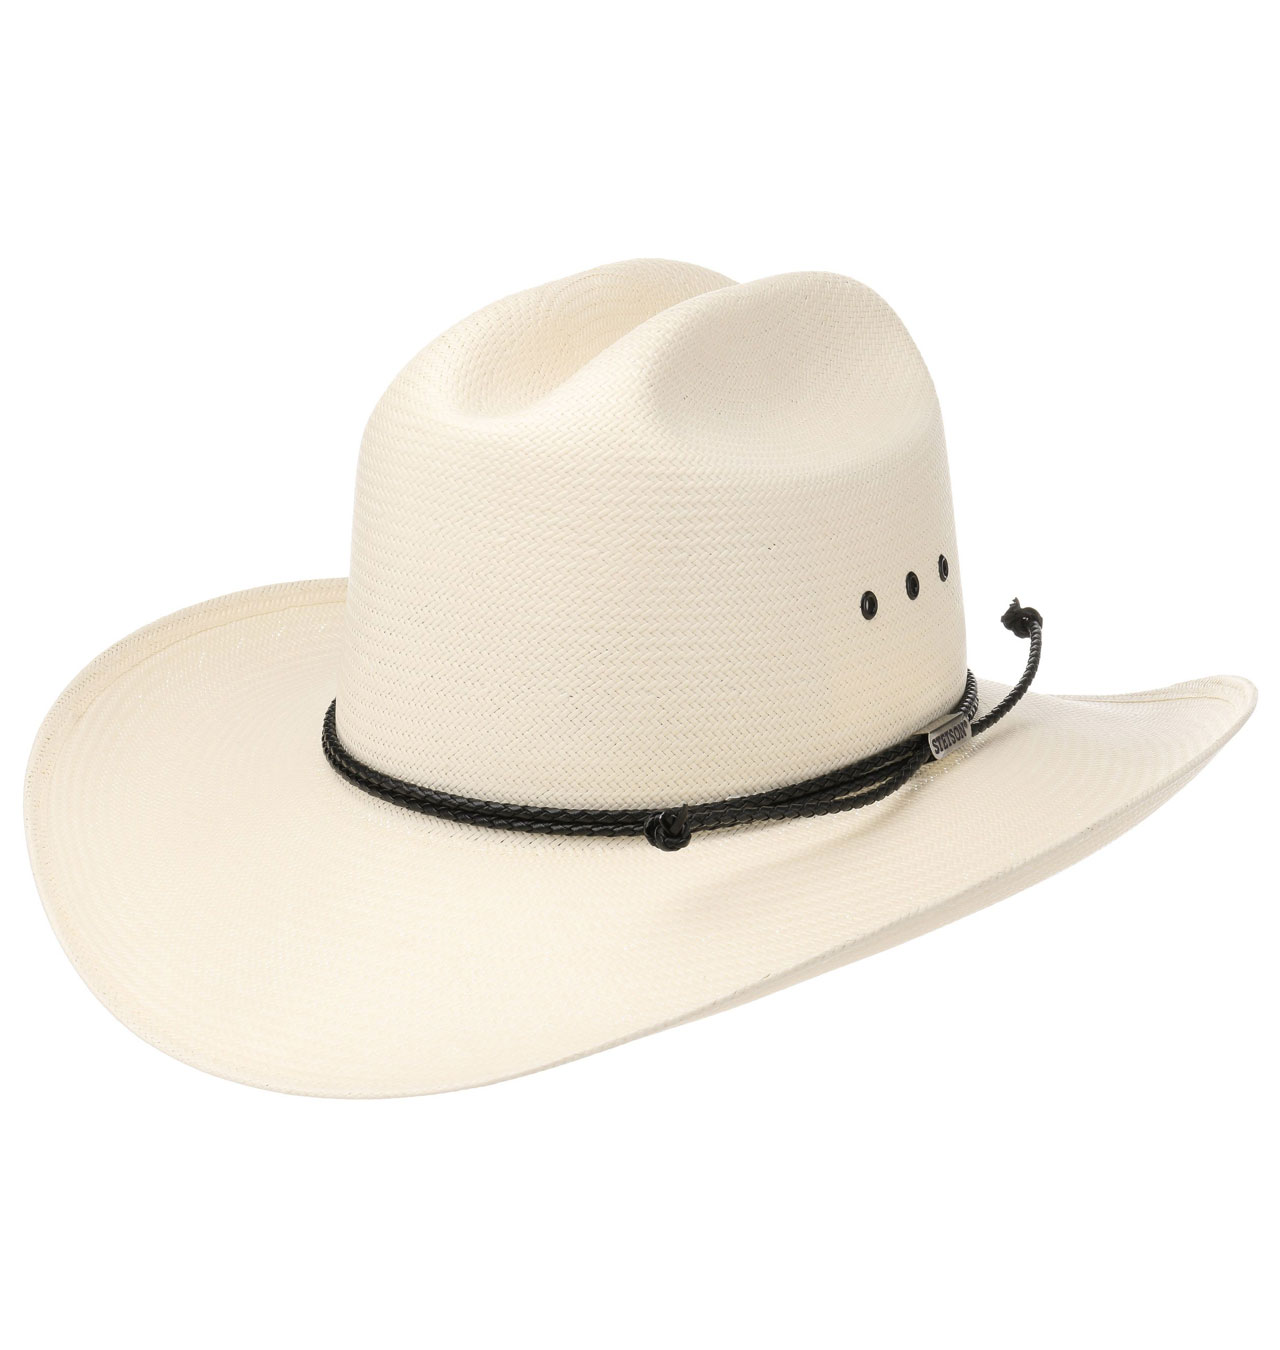 Stetson---Western-Comfort-10X-Straw-Hat---Cream-White-1